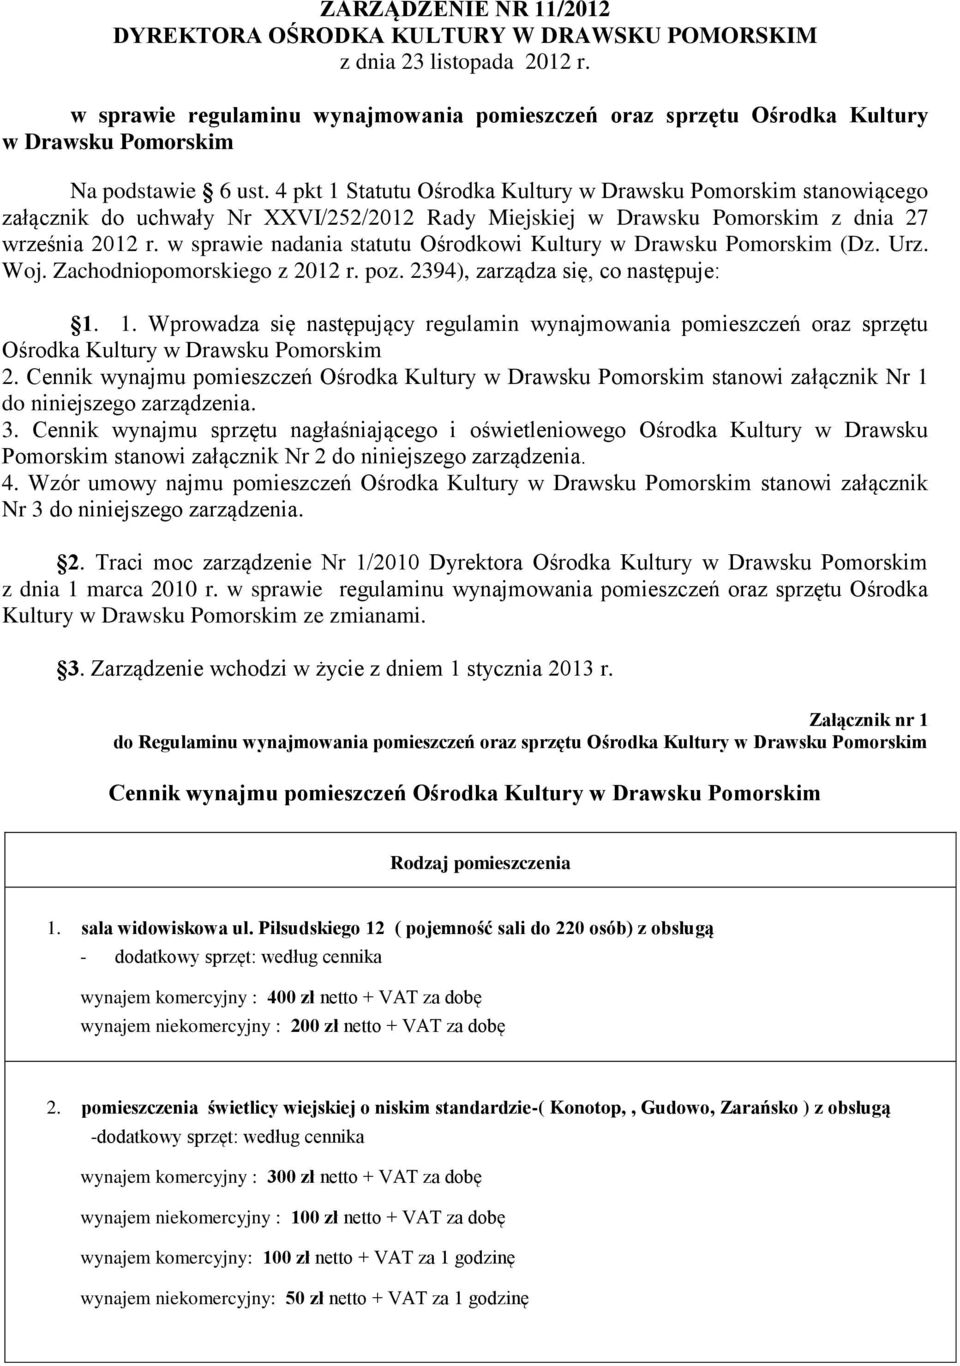 4 pkt 1 Statutu Ośrodka Kultury w Drawsku Pomorskim stanowiącego załącznik do uchwały Nr XXVI/252/2012 Rady Miejskiej w Drawsku Pomorskim z dnia 27 września 2012 r.